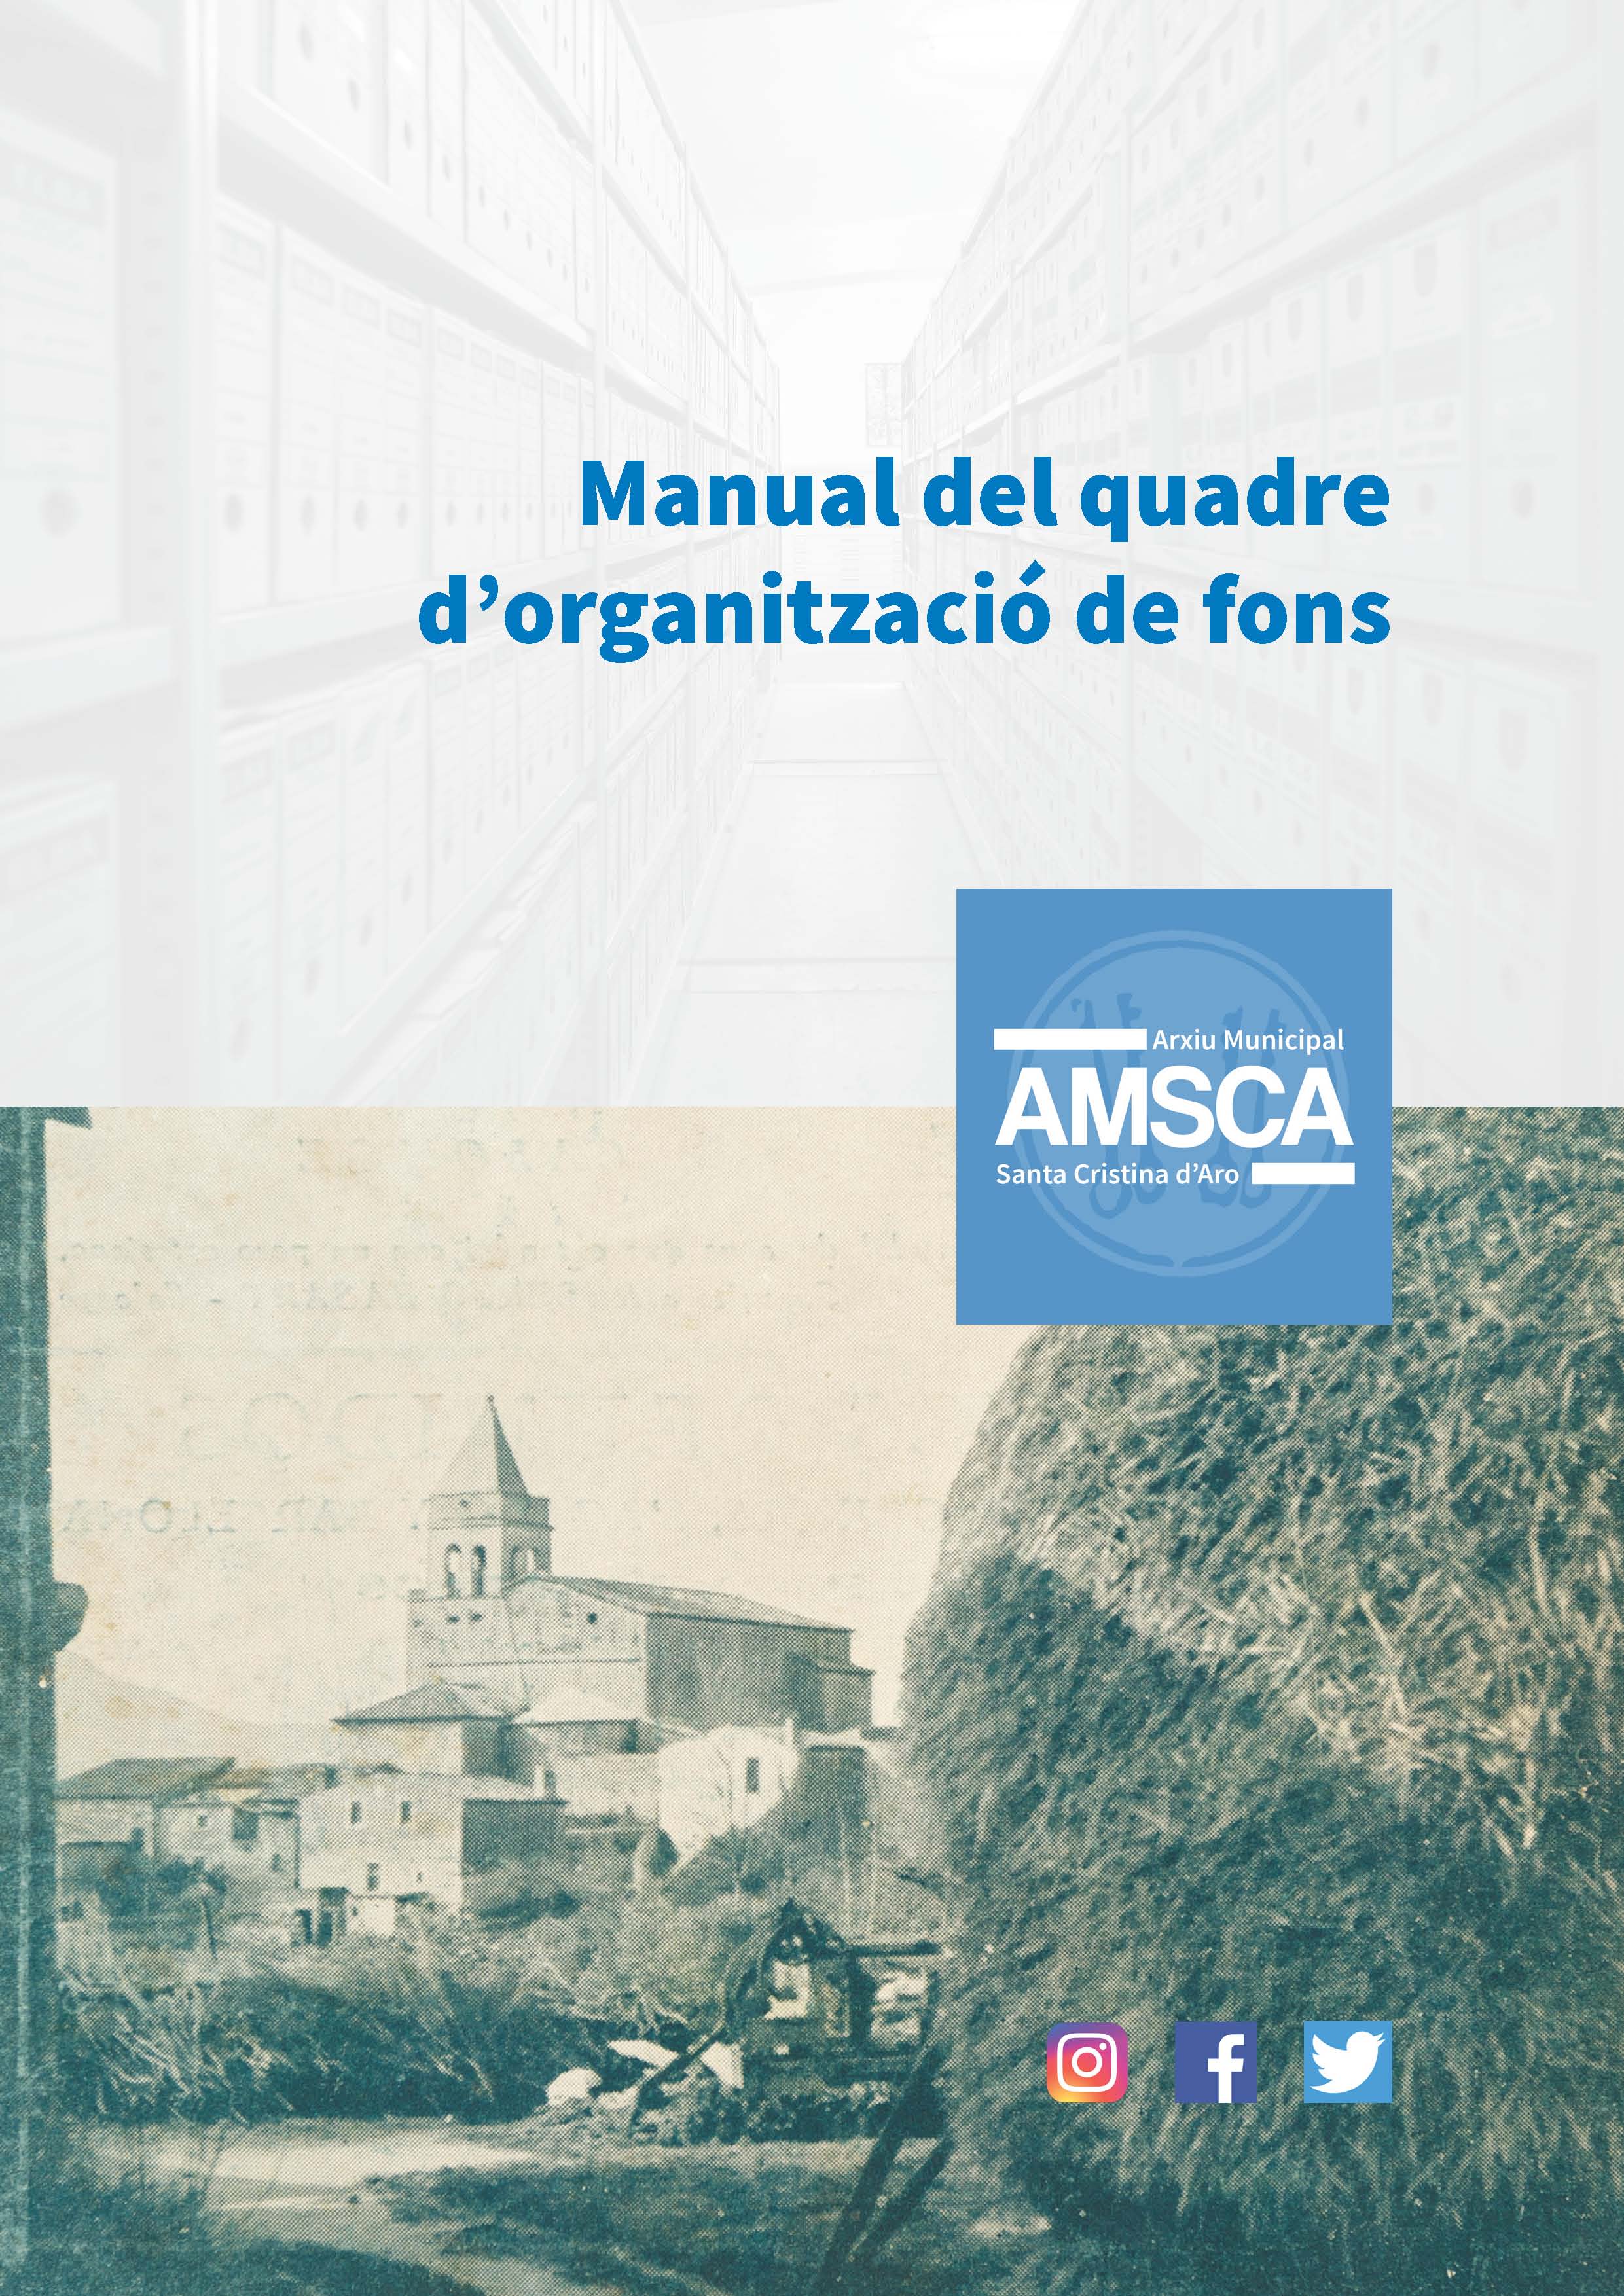 QOF Manual AMSCA v5 DEF Página 1